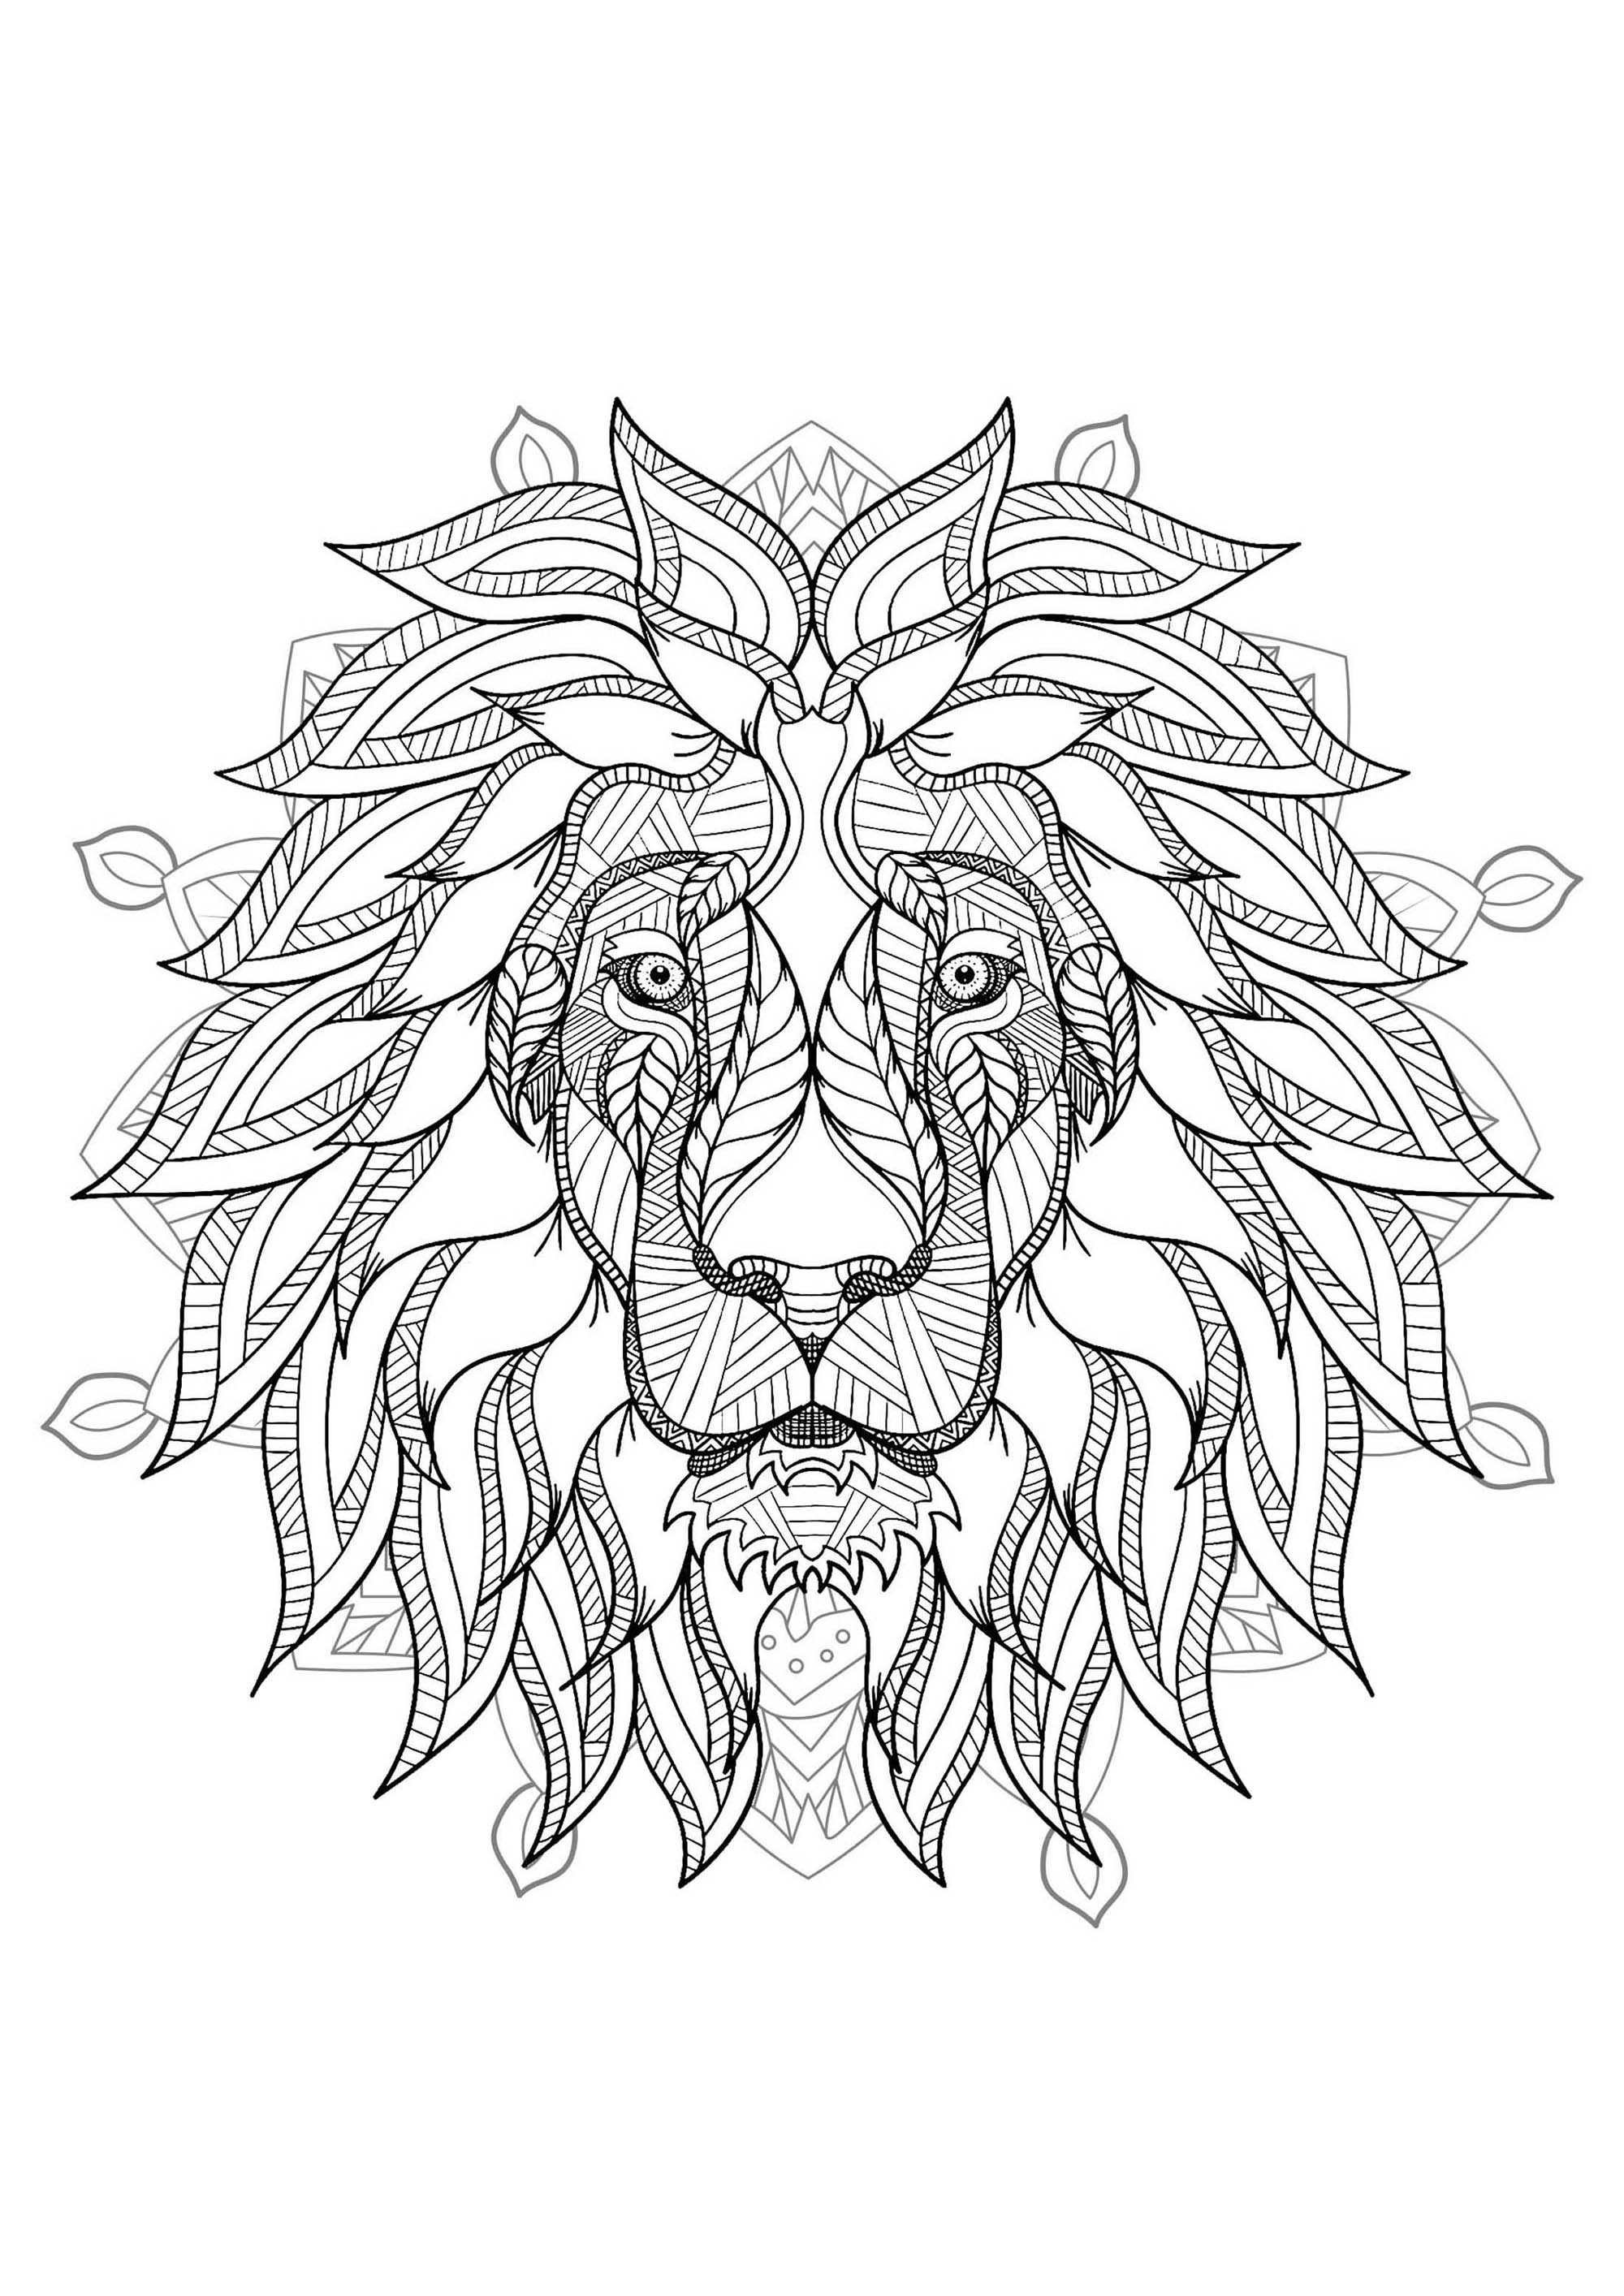 Mandala de cabeça de leão - 2. É a tua vez de colorir o Rei dos Animais, nesta bela página simétrica e detalhada para colorir.